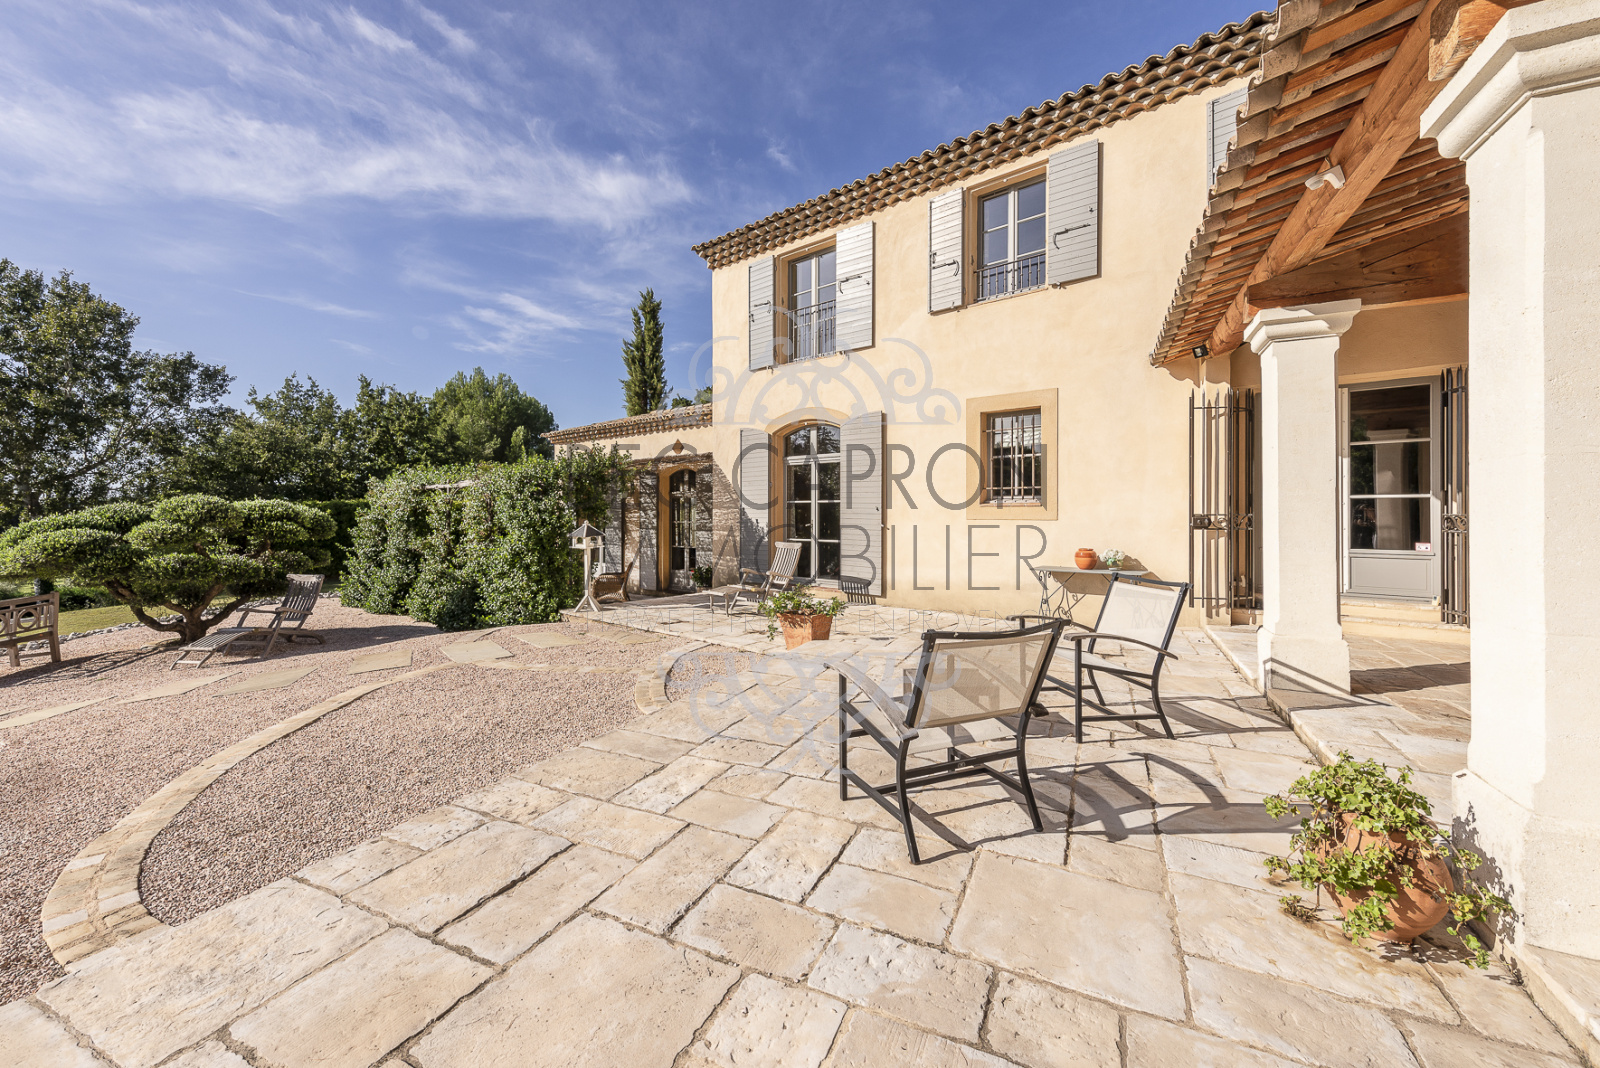 Image_4, Maisons (maison, propriÃ©tÃ©, villa, Mas,bastide, maison de village), Aix-en-Provence, ref :988 VM